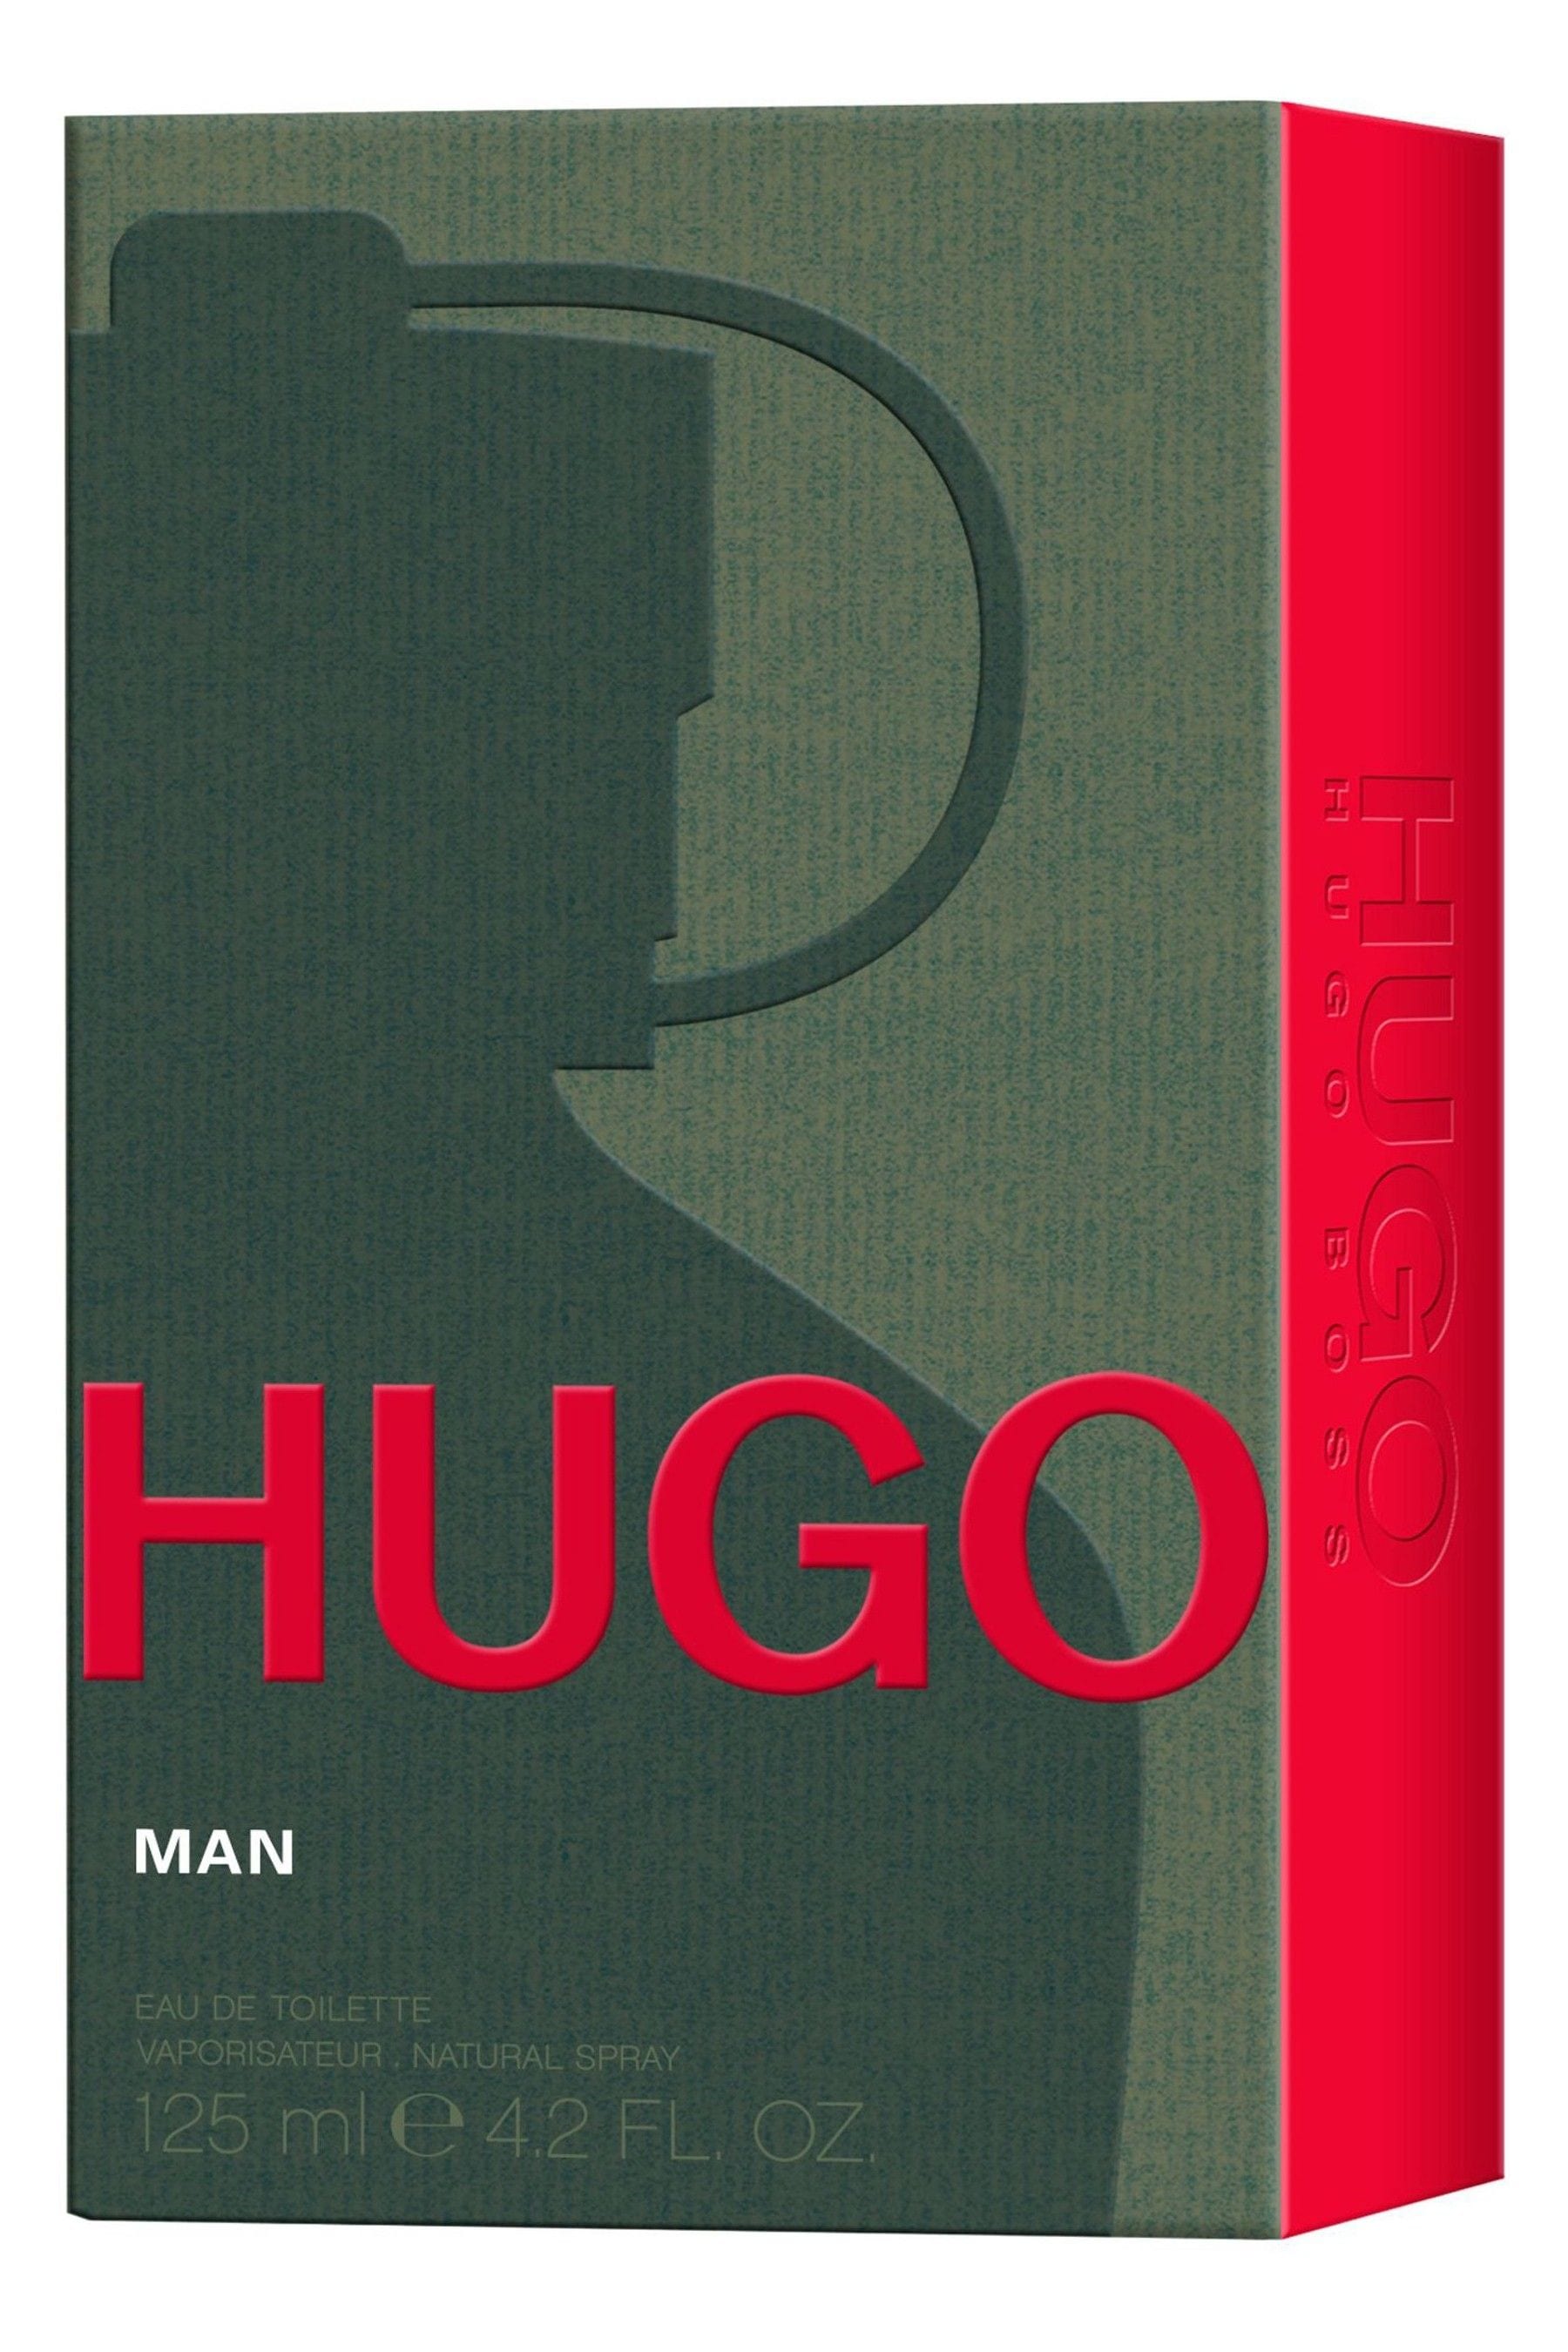 Buy HUGO MAN Eau de Toilette 125ml from the Next UK online shop